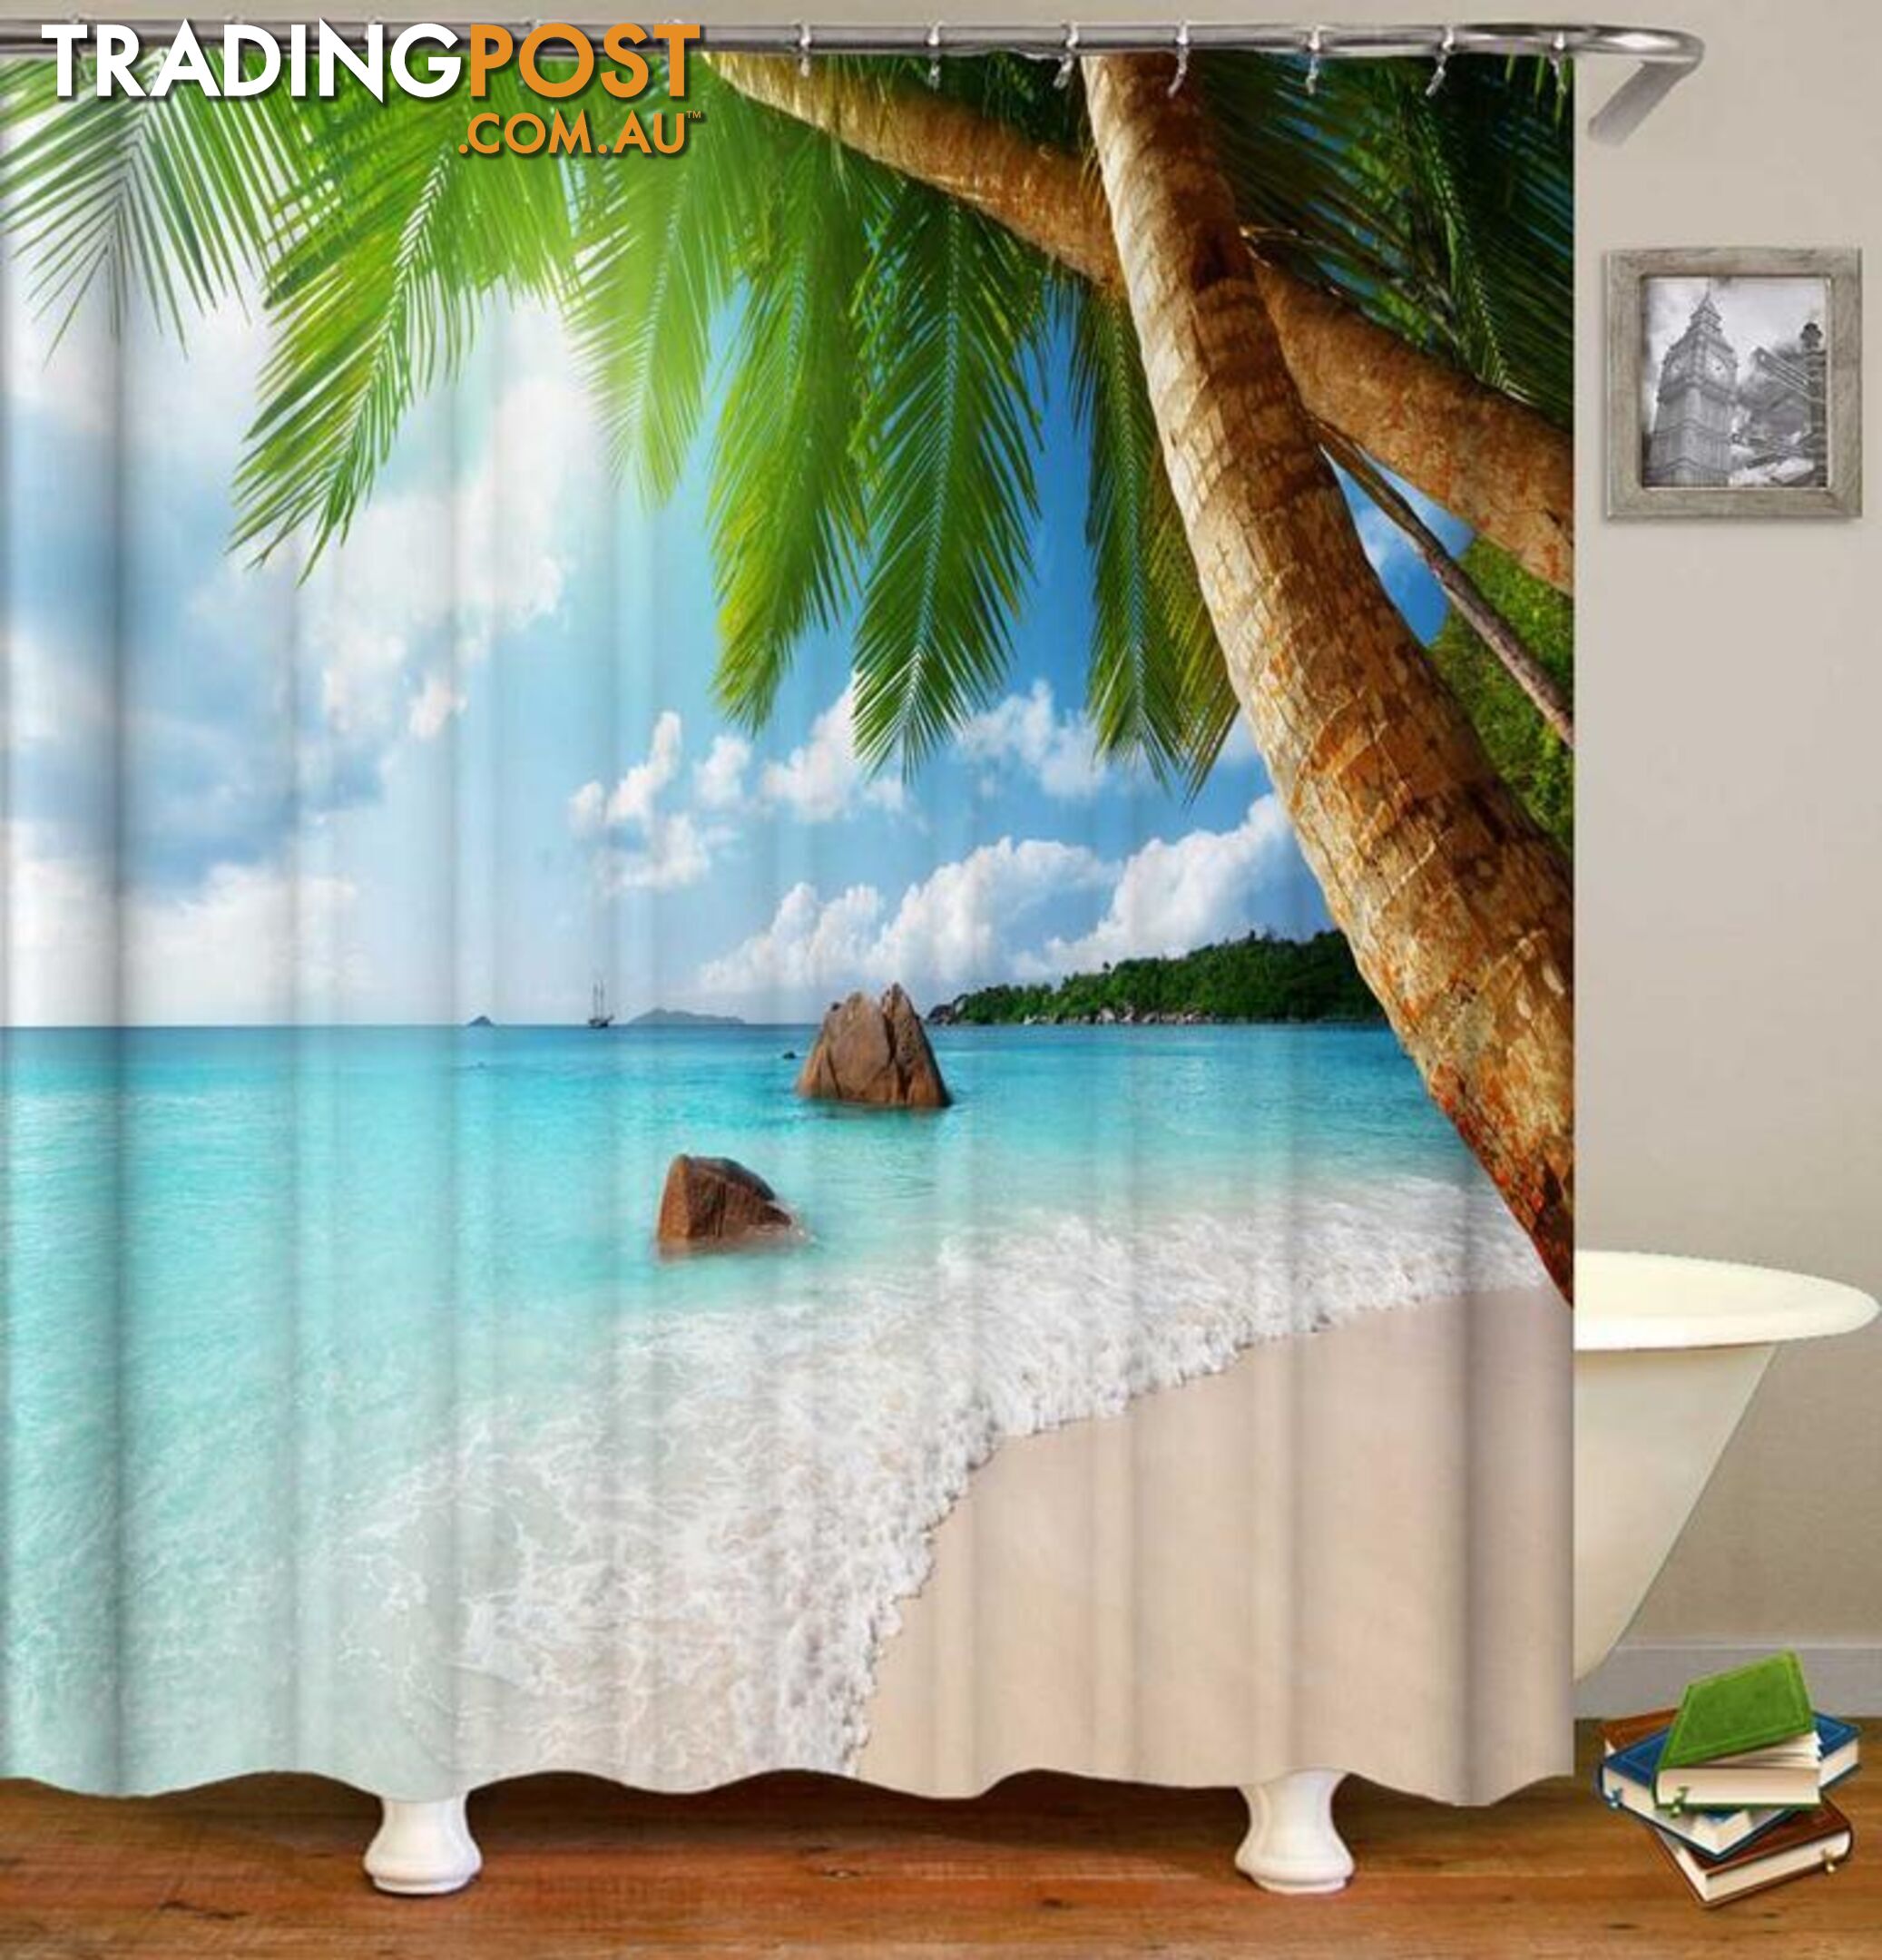 Tropical Beach Shower Curtain - Curtain - 7427046076760